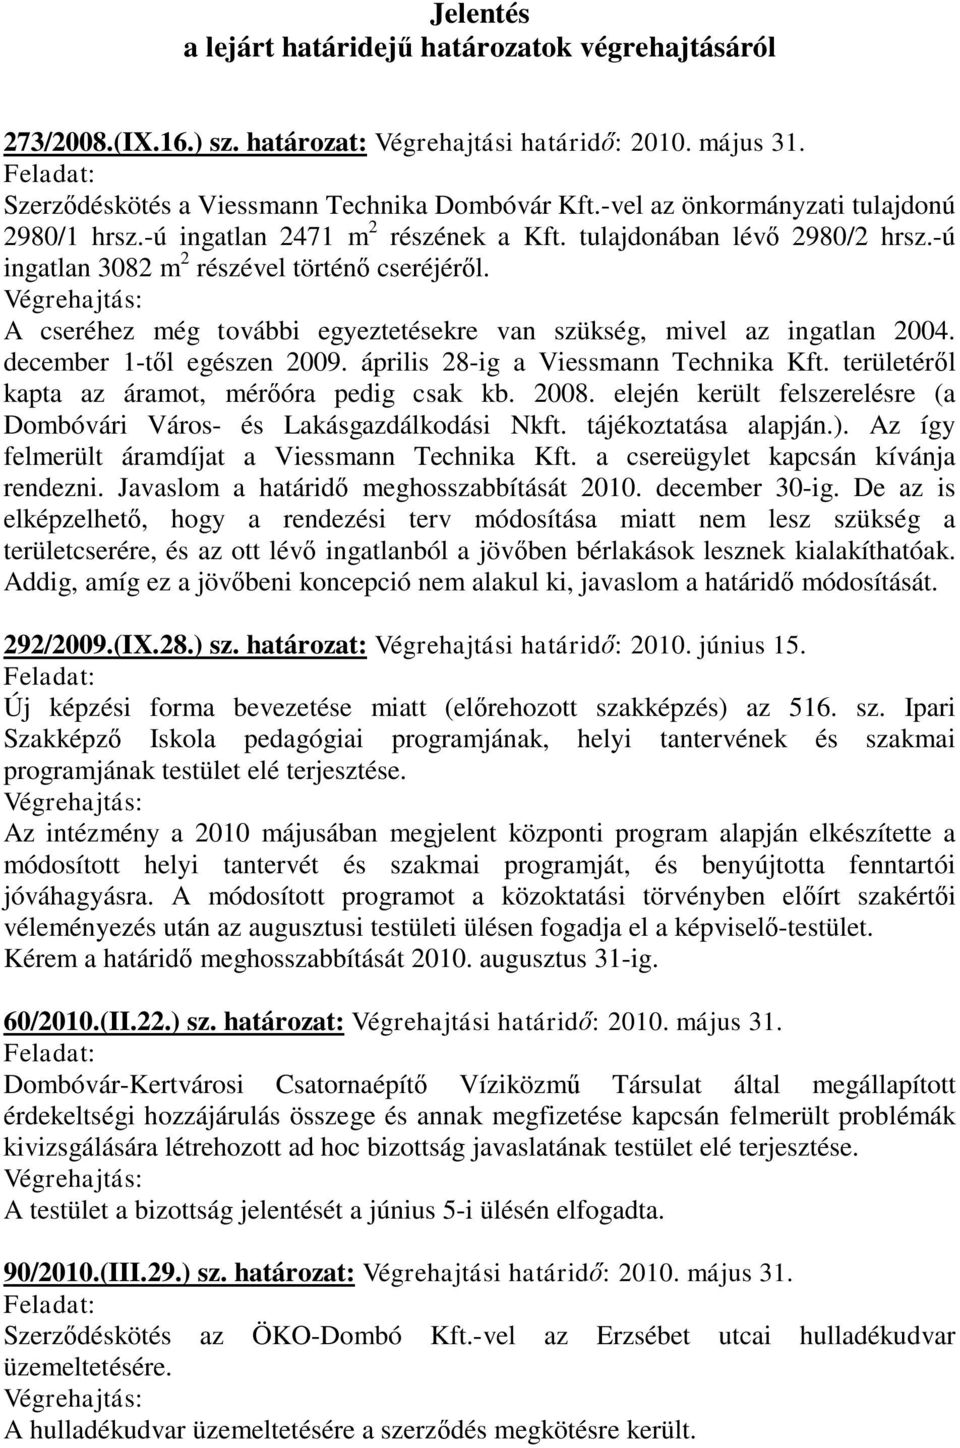 A cseréhez még további egyeztetésekre van szükség, mivel az ingatlan 2004. december 1-től egészen 2009. április 28-ig a Viessmann Technika Kft. területéről kapta az áramot, mérőóra pedig csak kb.